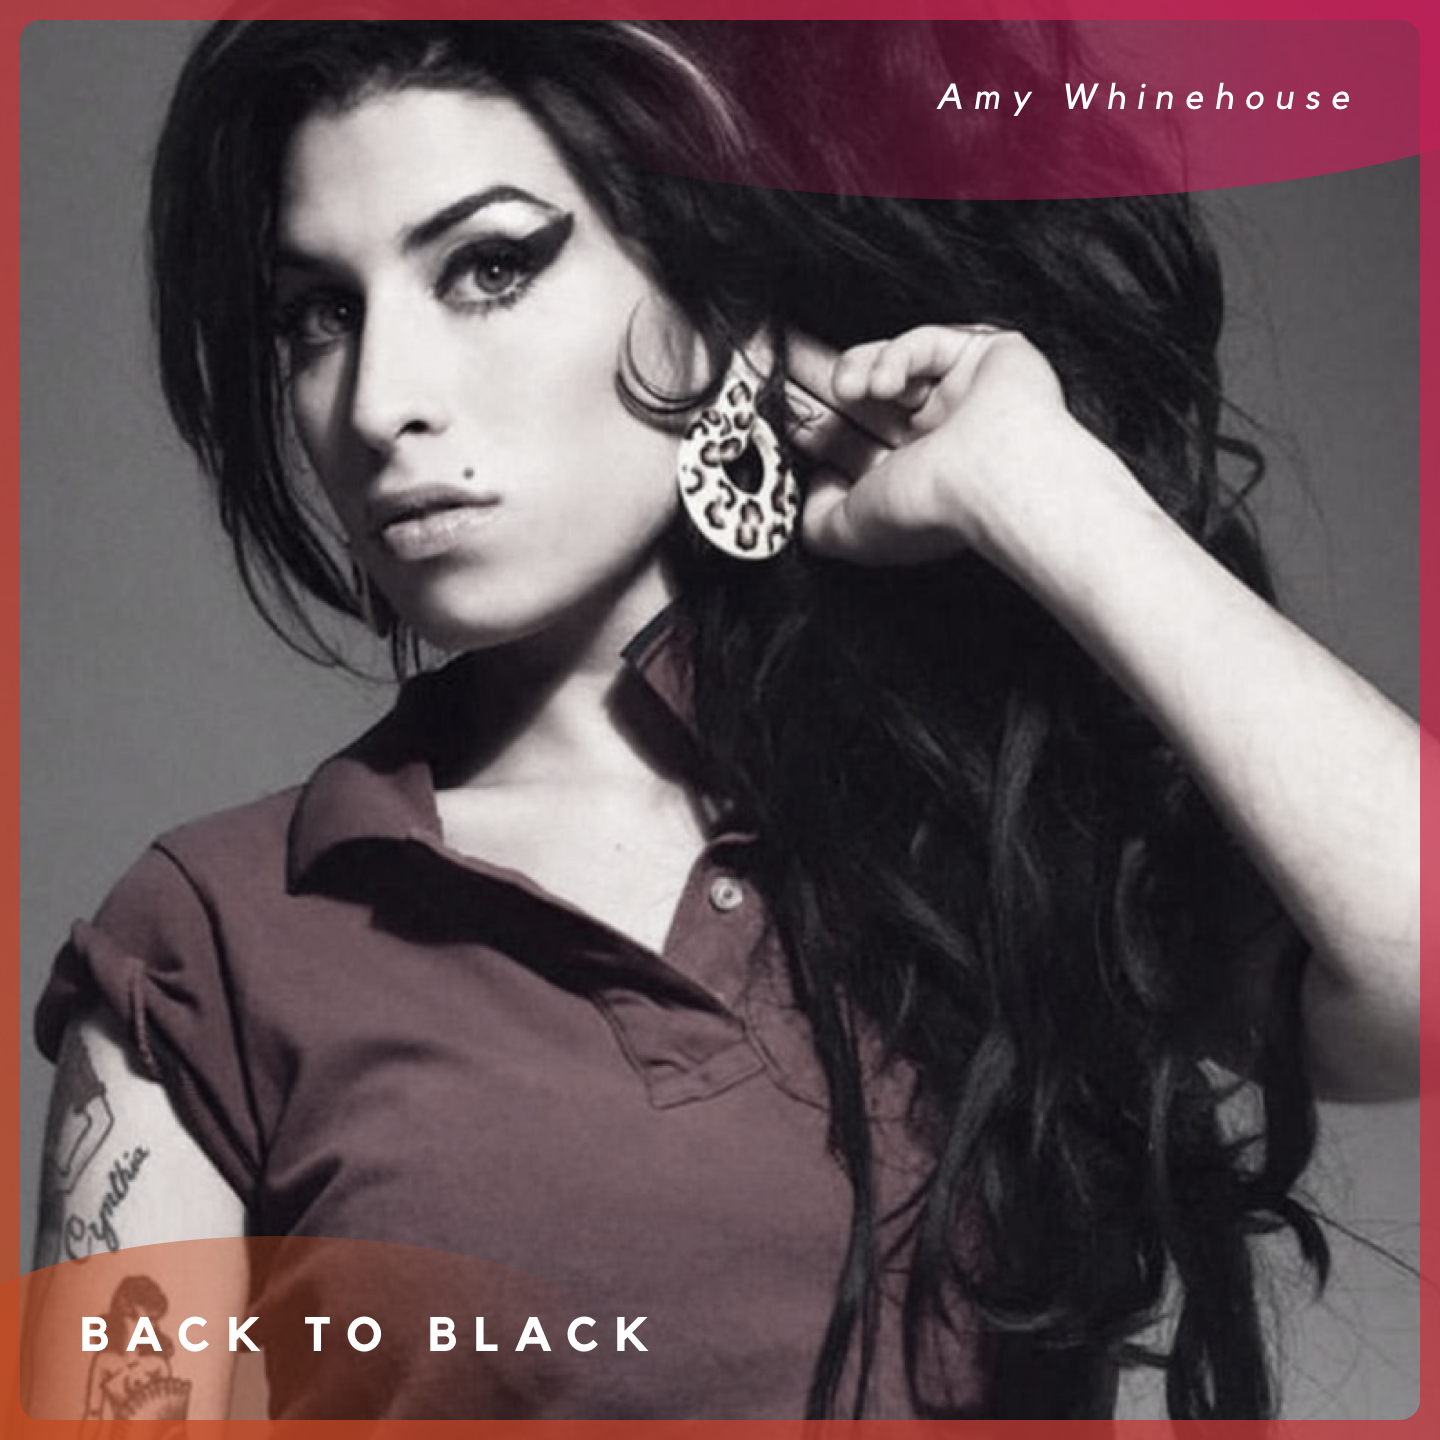 Back To Black / Ally El Wadaa (Mashup) feat. Maram El Desoki & Hazem Ehab Saad -
                    Luxe radio